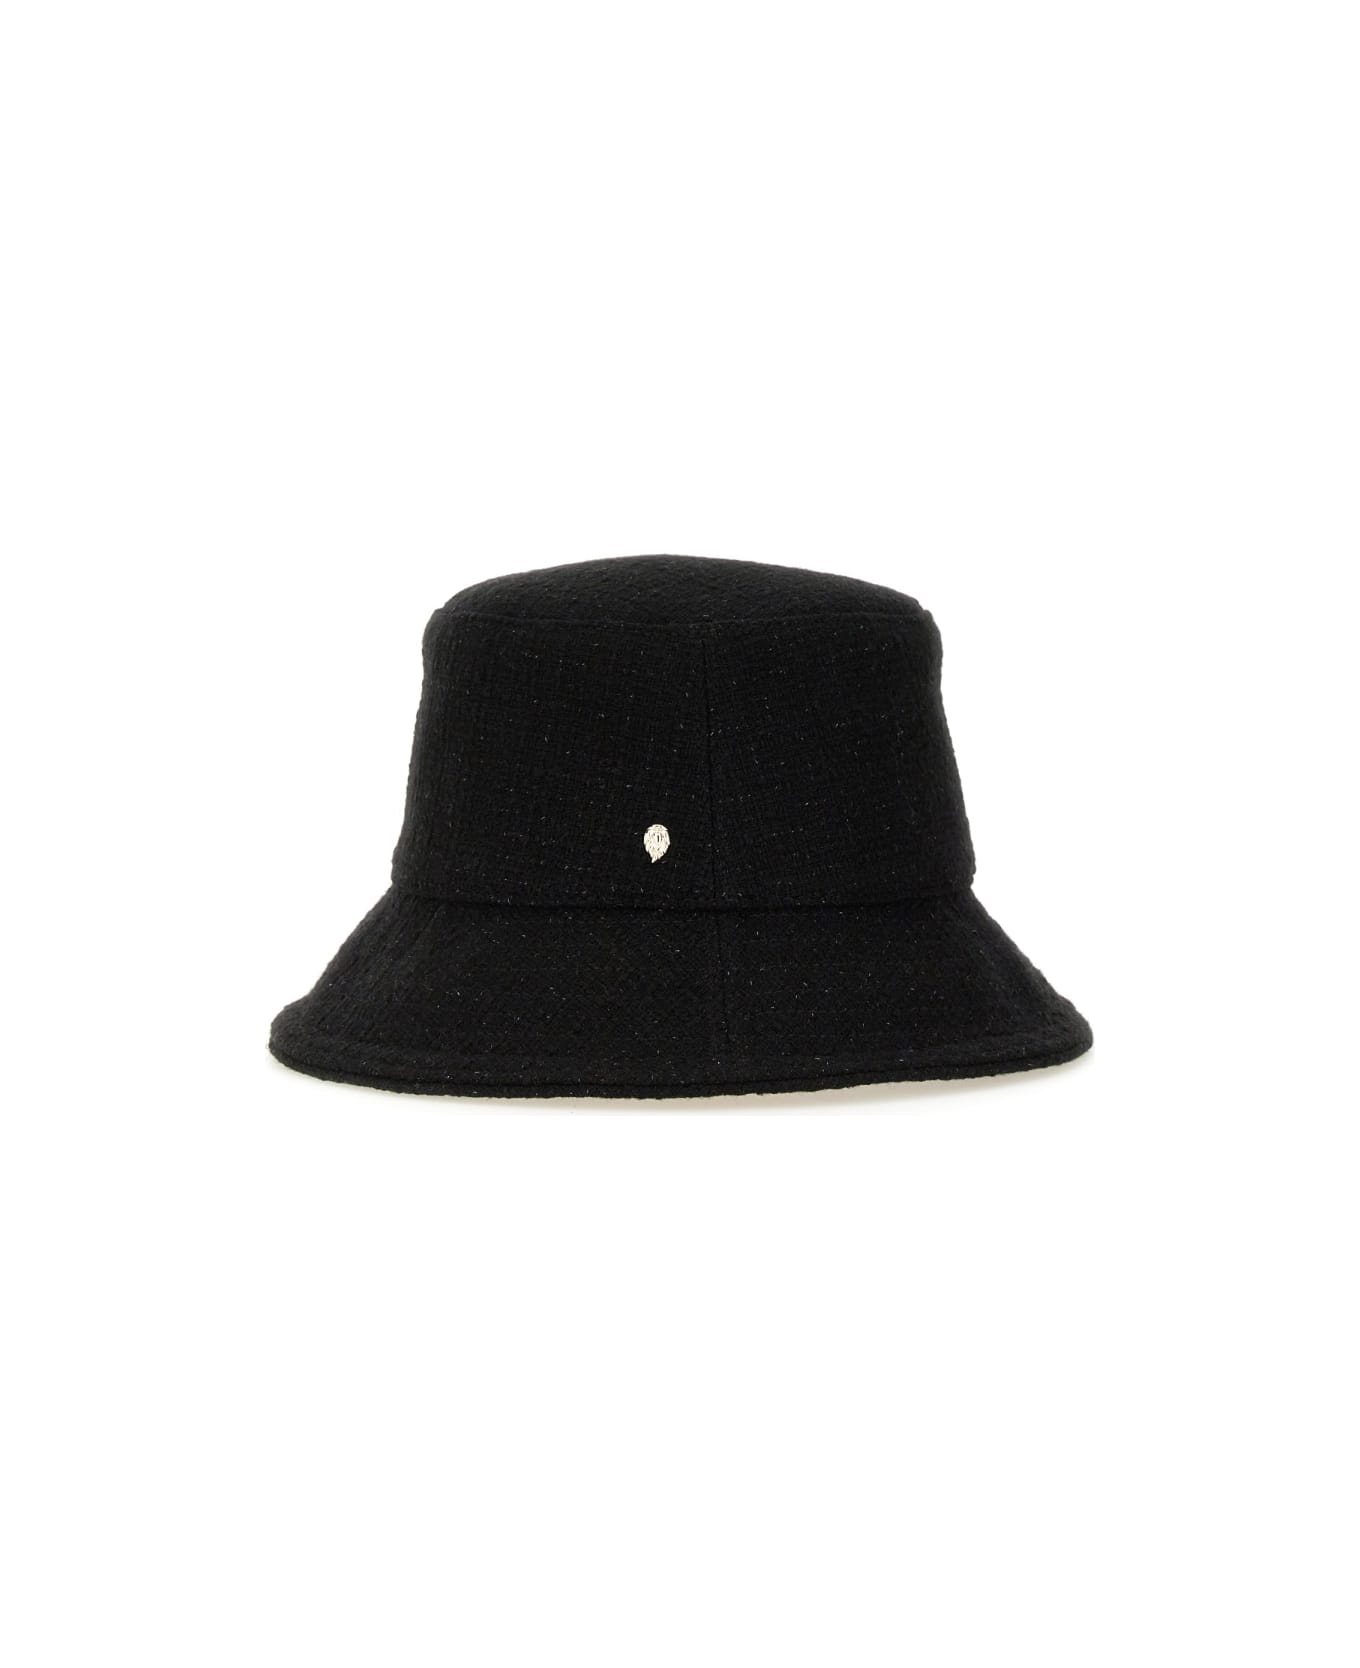 Helen Kaminski Hat "lantana" - BLACK